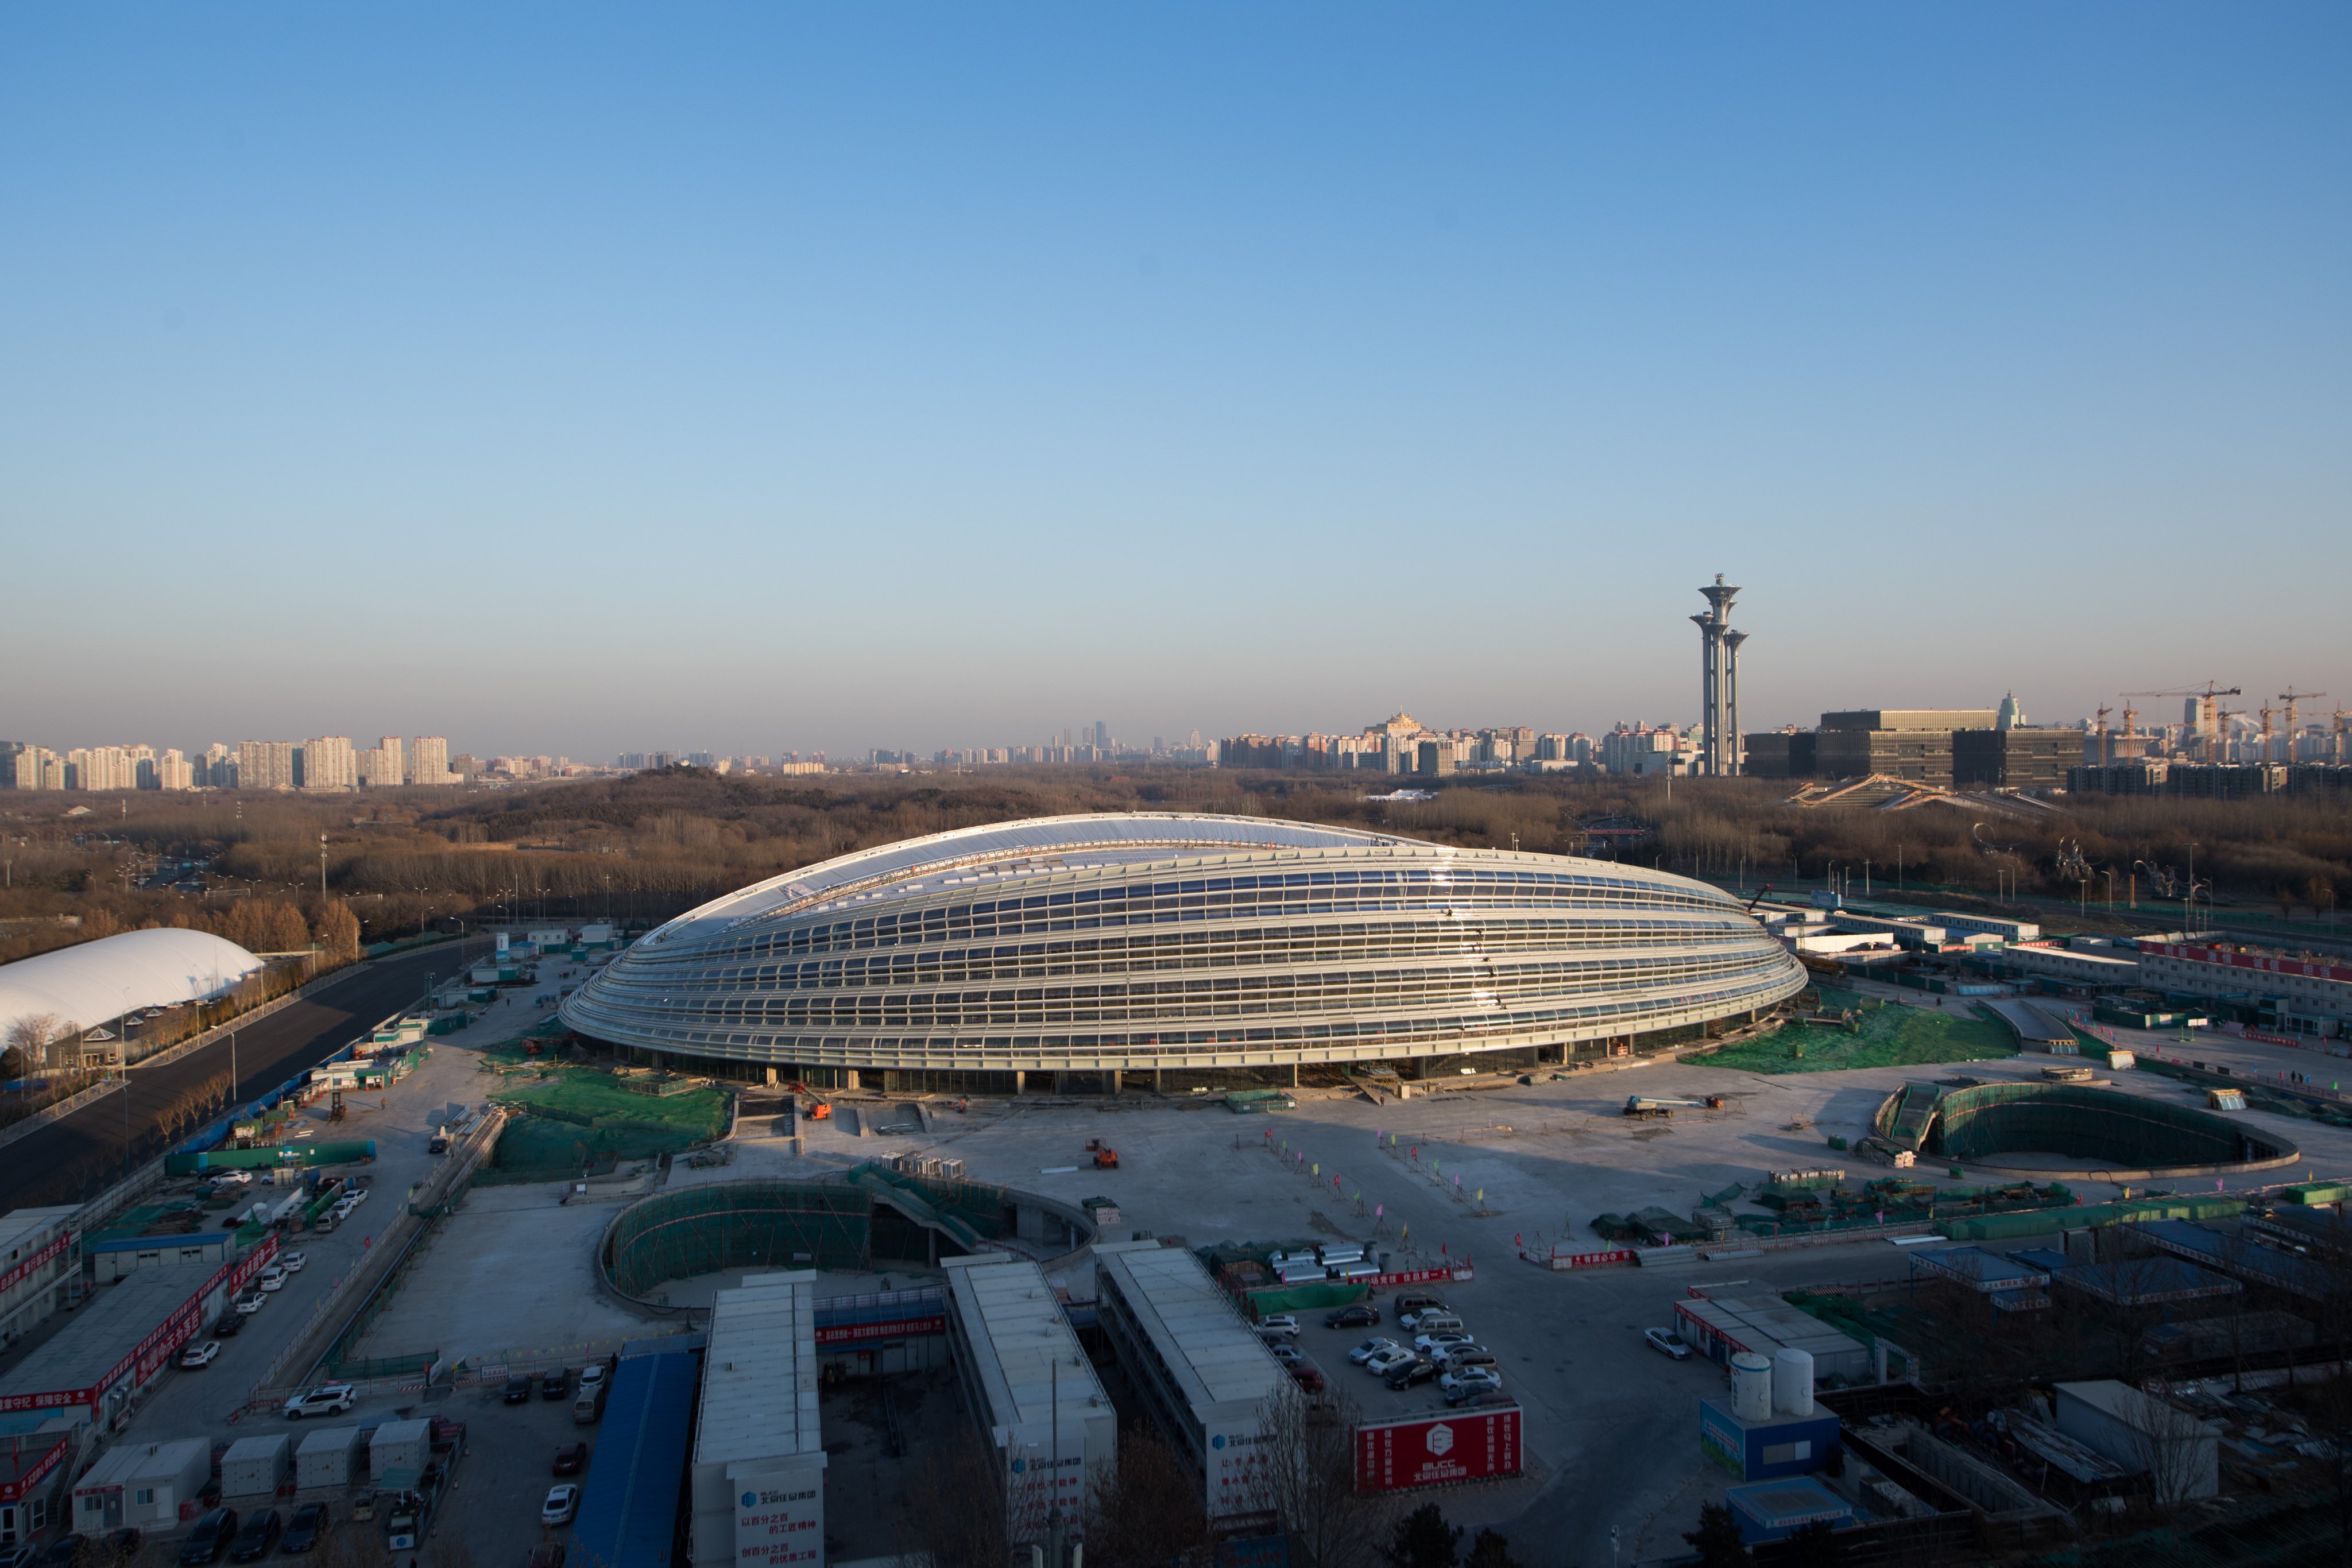 The National Speed Skating Oval di Beijing ini akan digunakan untuk menggelar Olimpiade Musim Dingin pada 2022 mendatang. (Foto: Twitter/@XHSport)